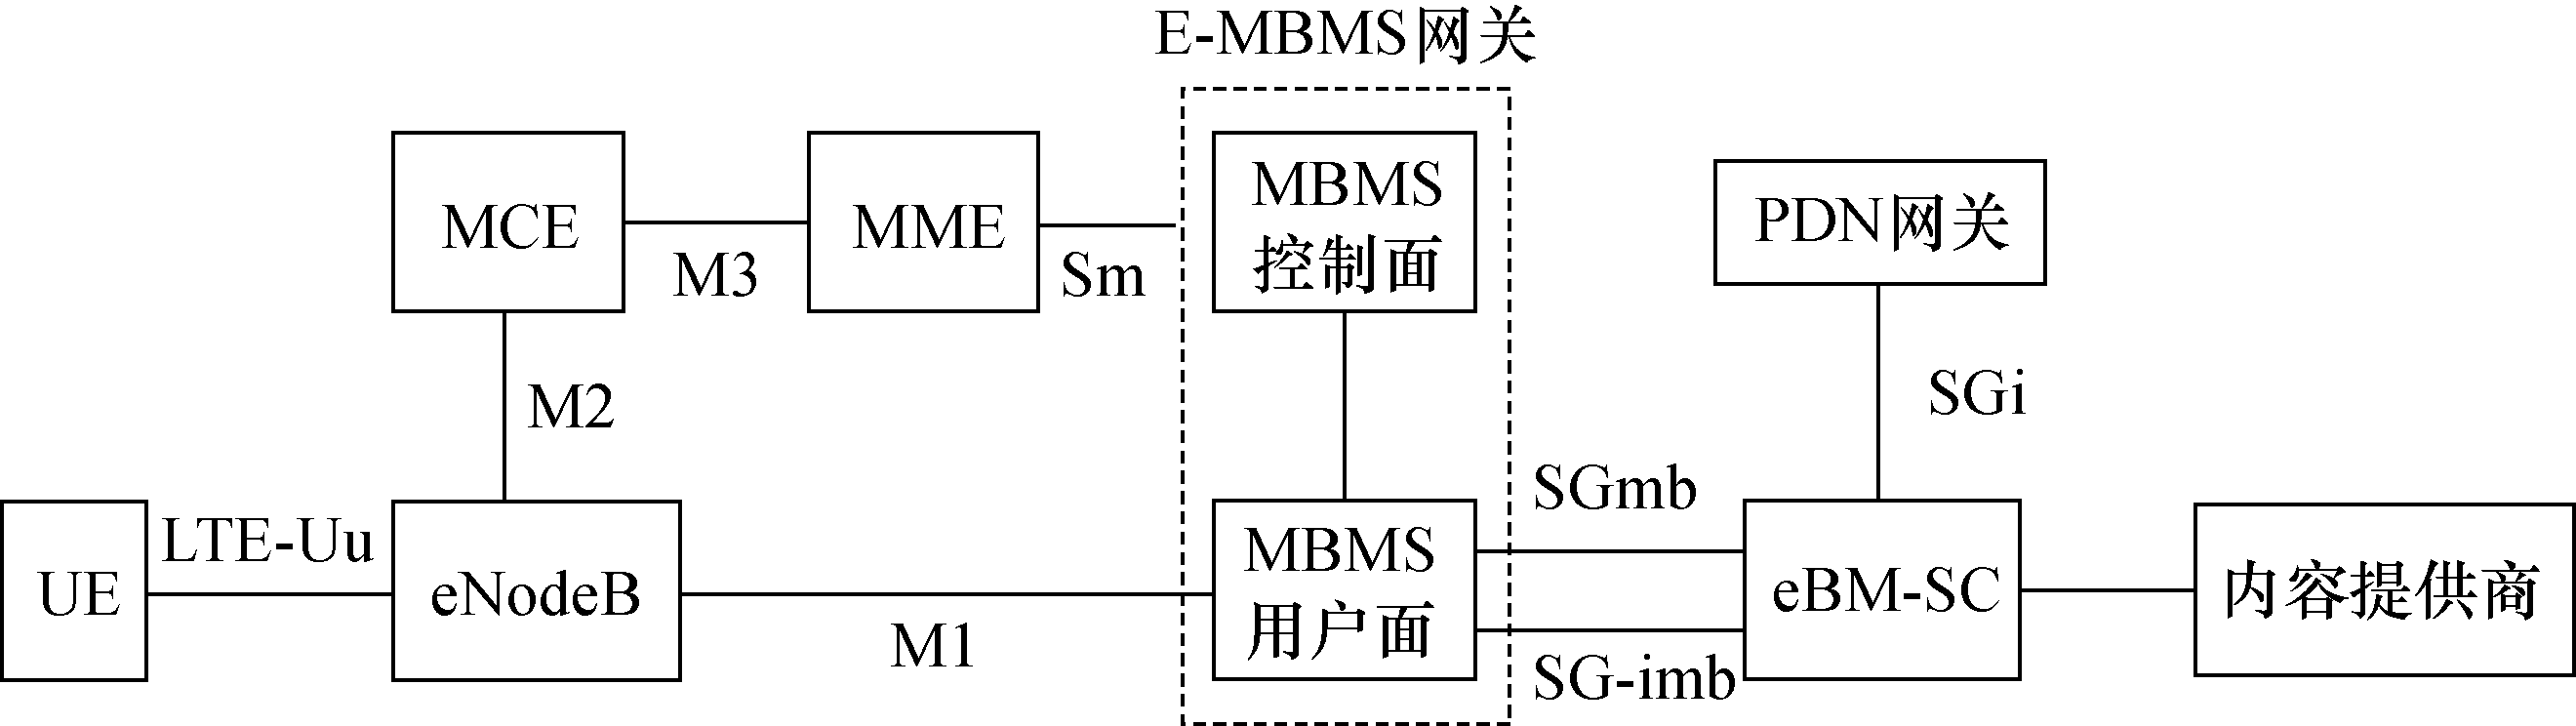 圖2  E-MBMS邏輯架構